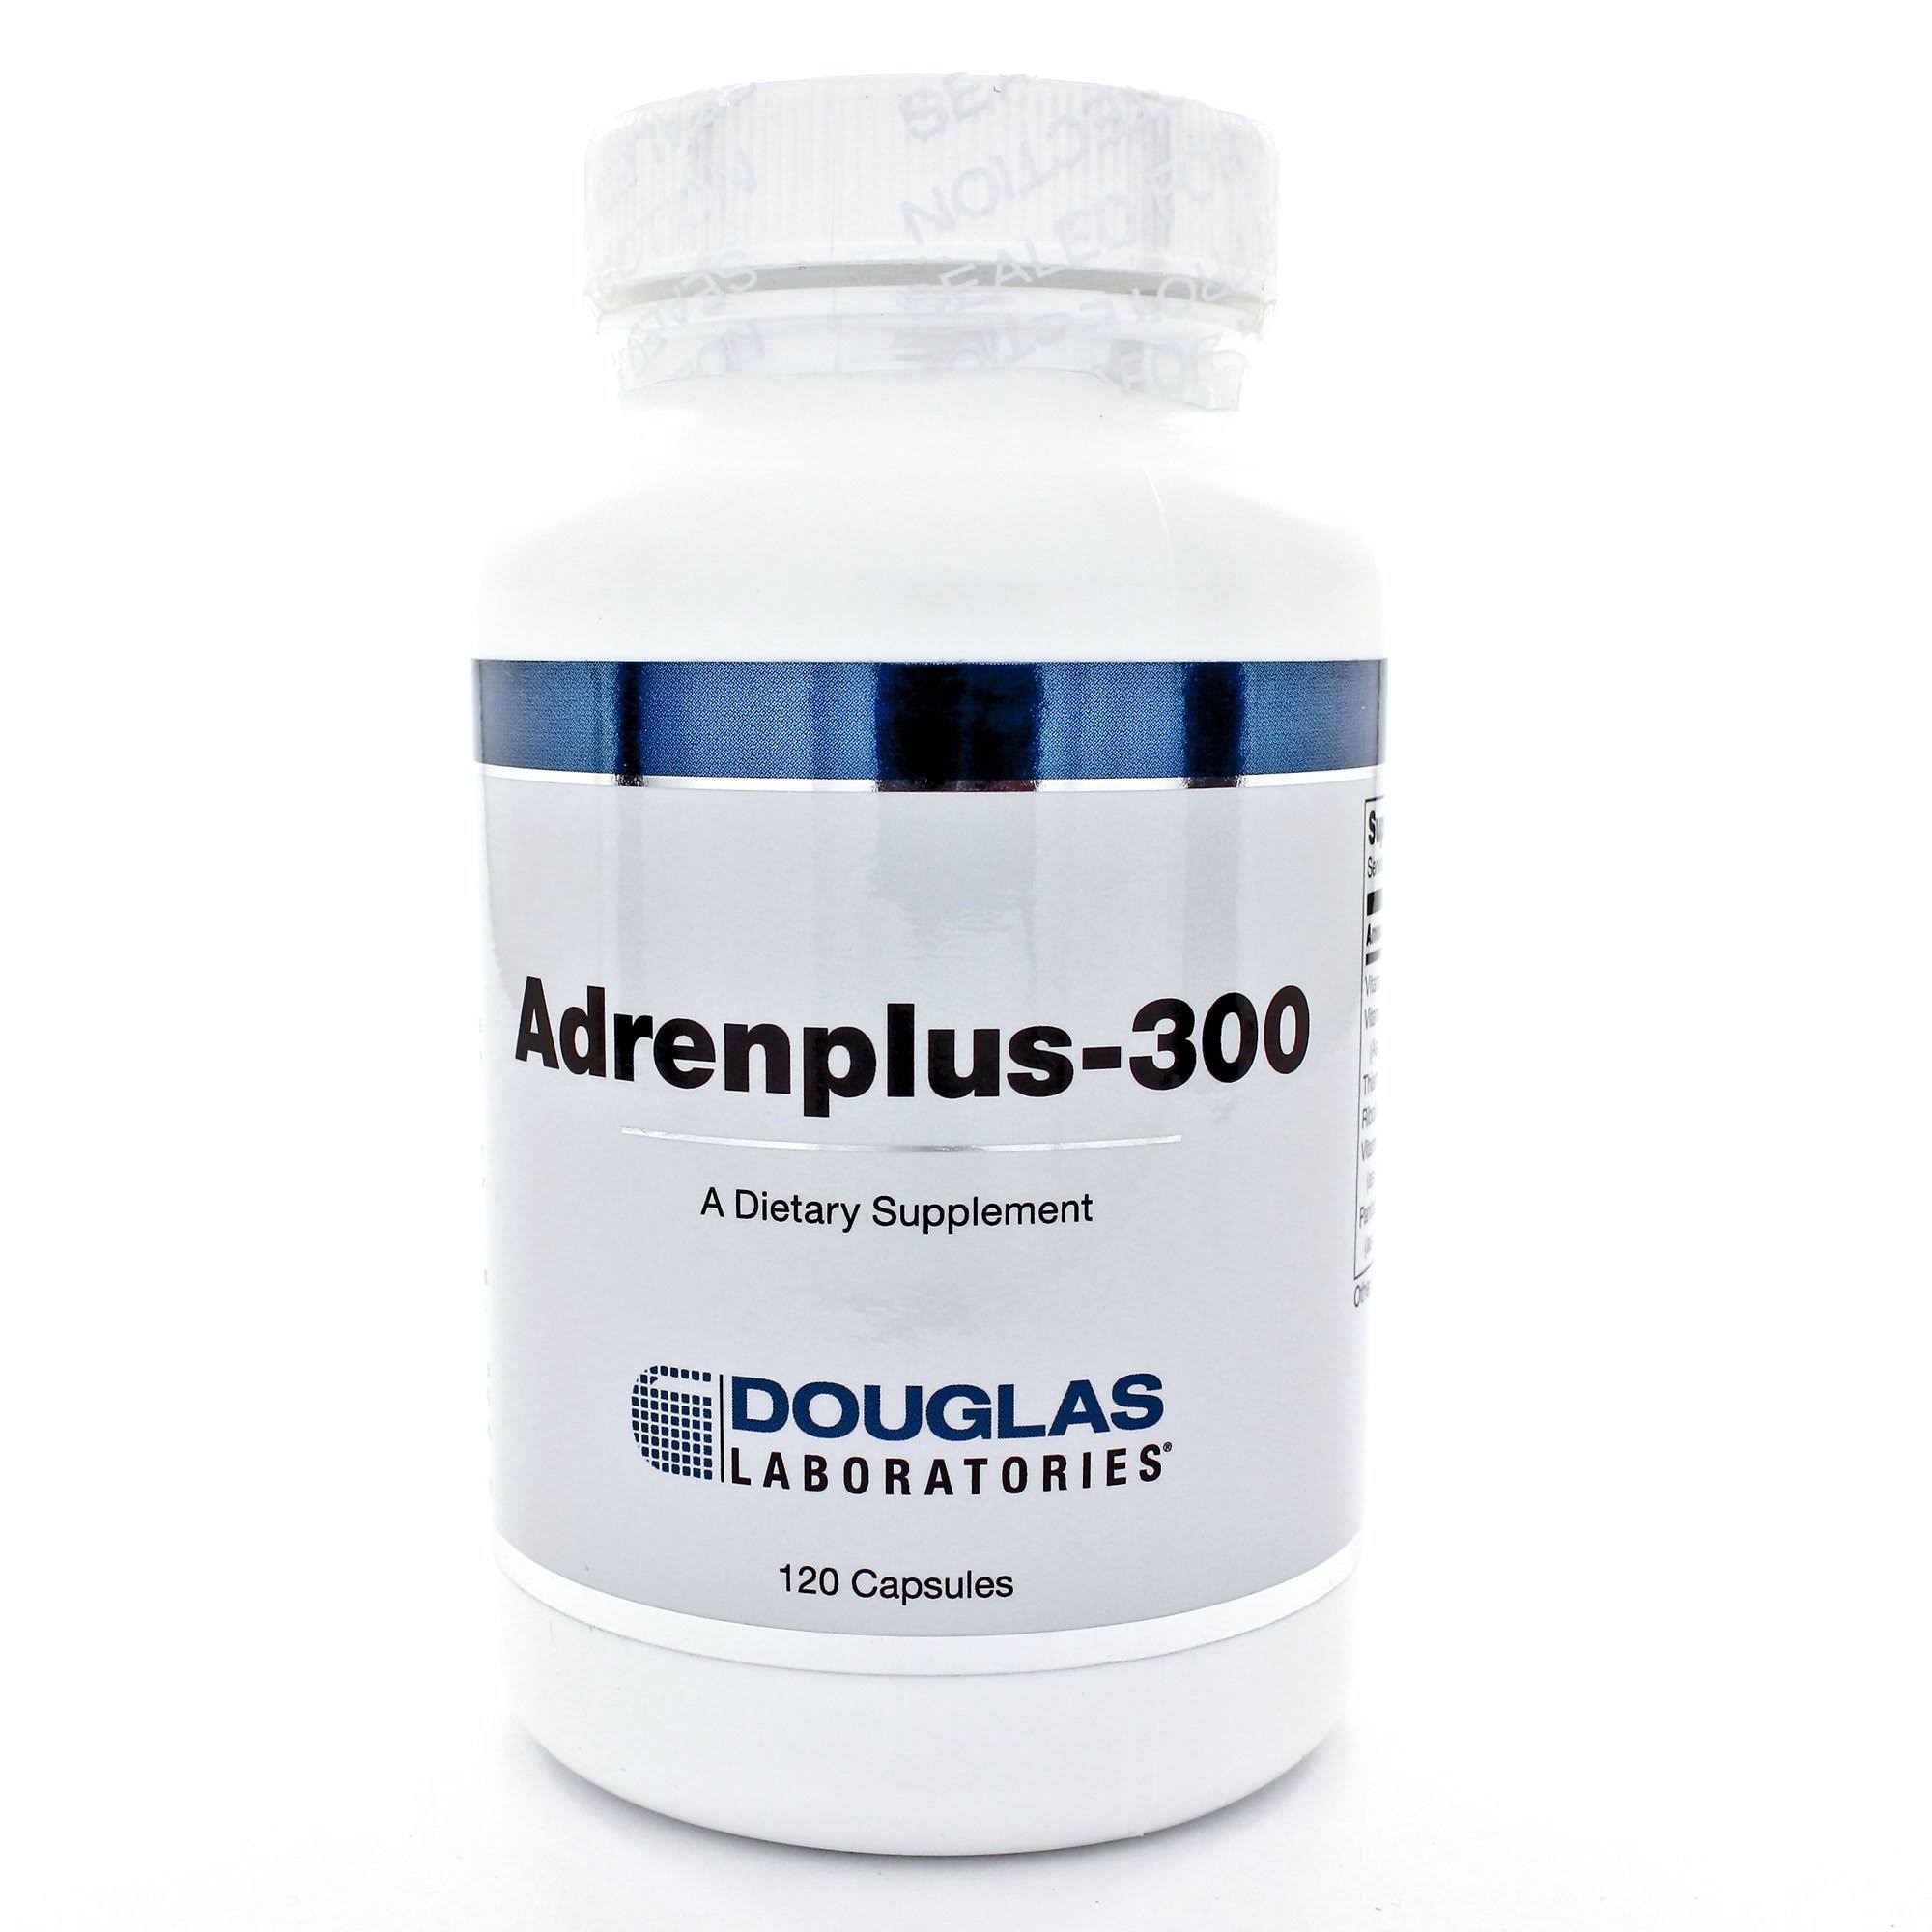 Douglas Laboratories - Adrenplus-300 - 120 Capsules